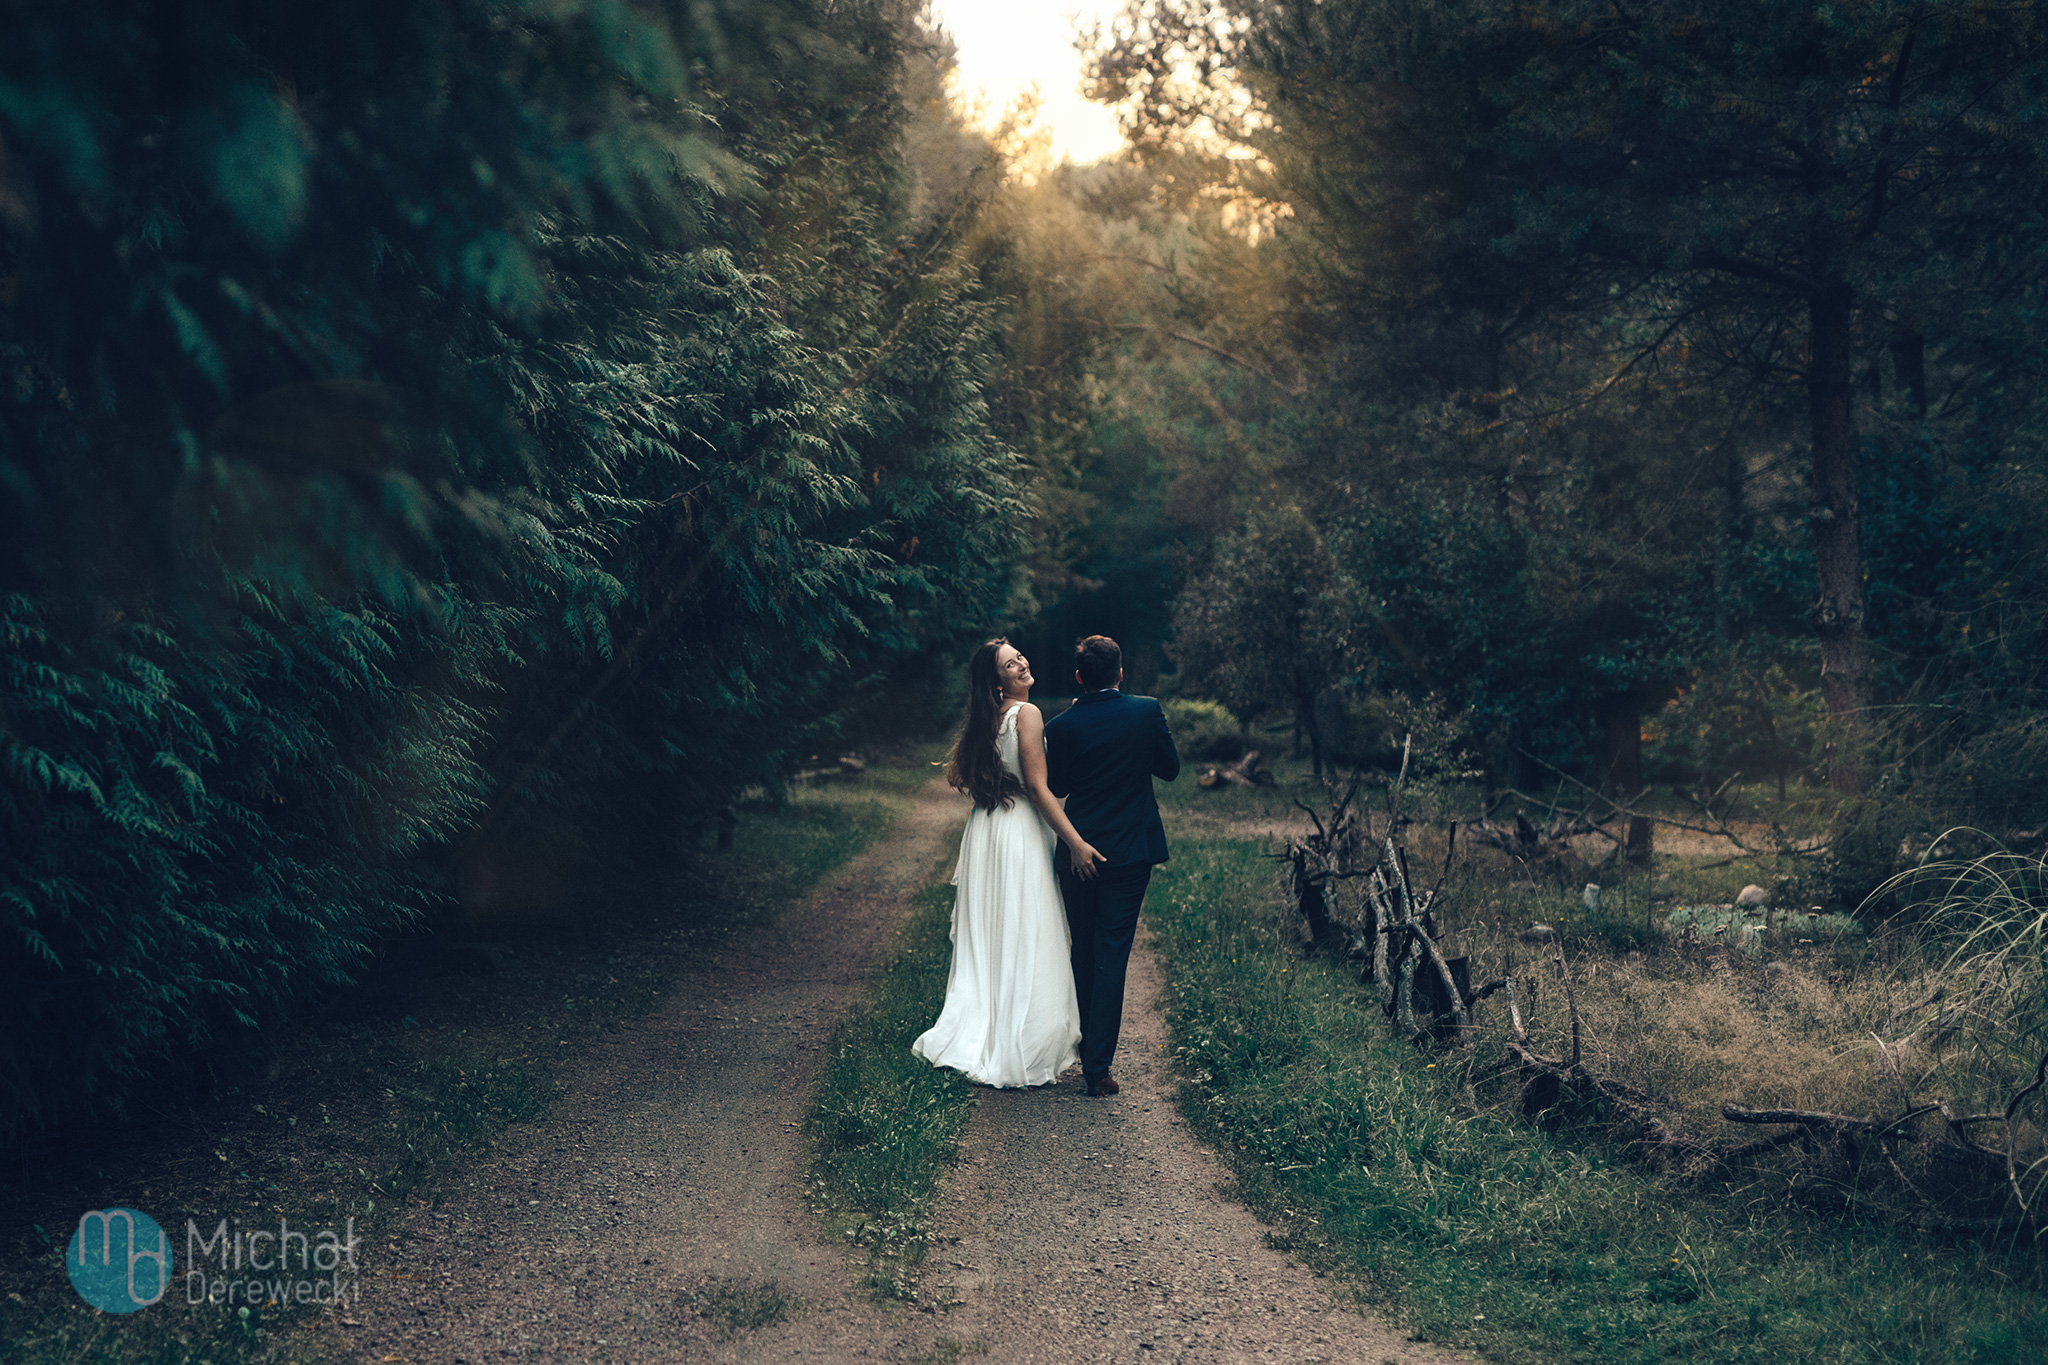 sesja poślubna w lesie